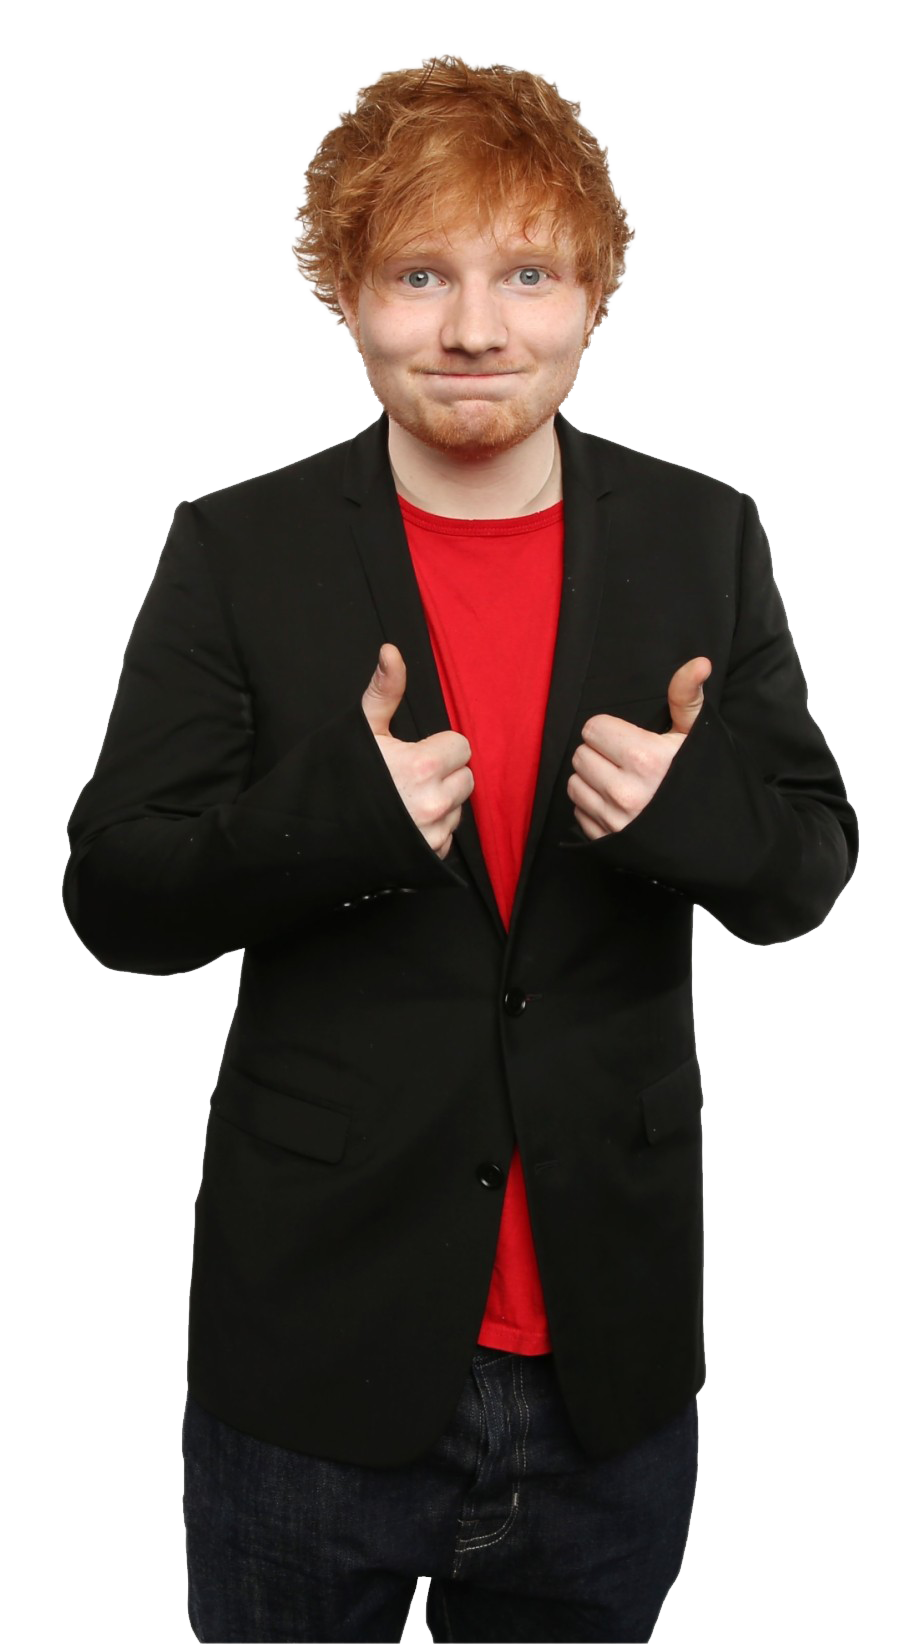 Ed Sheeran Free PNG Image